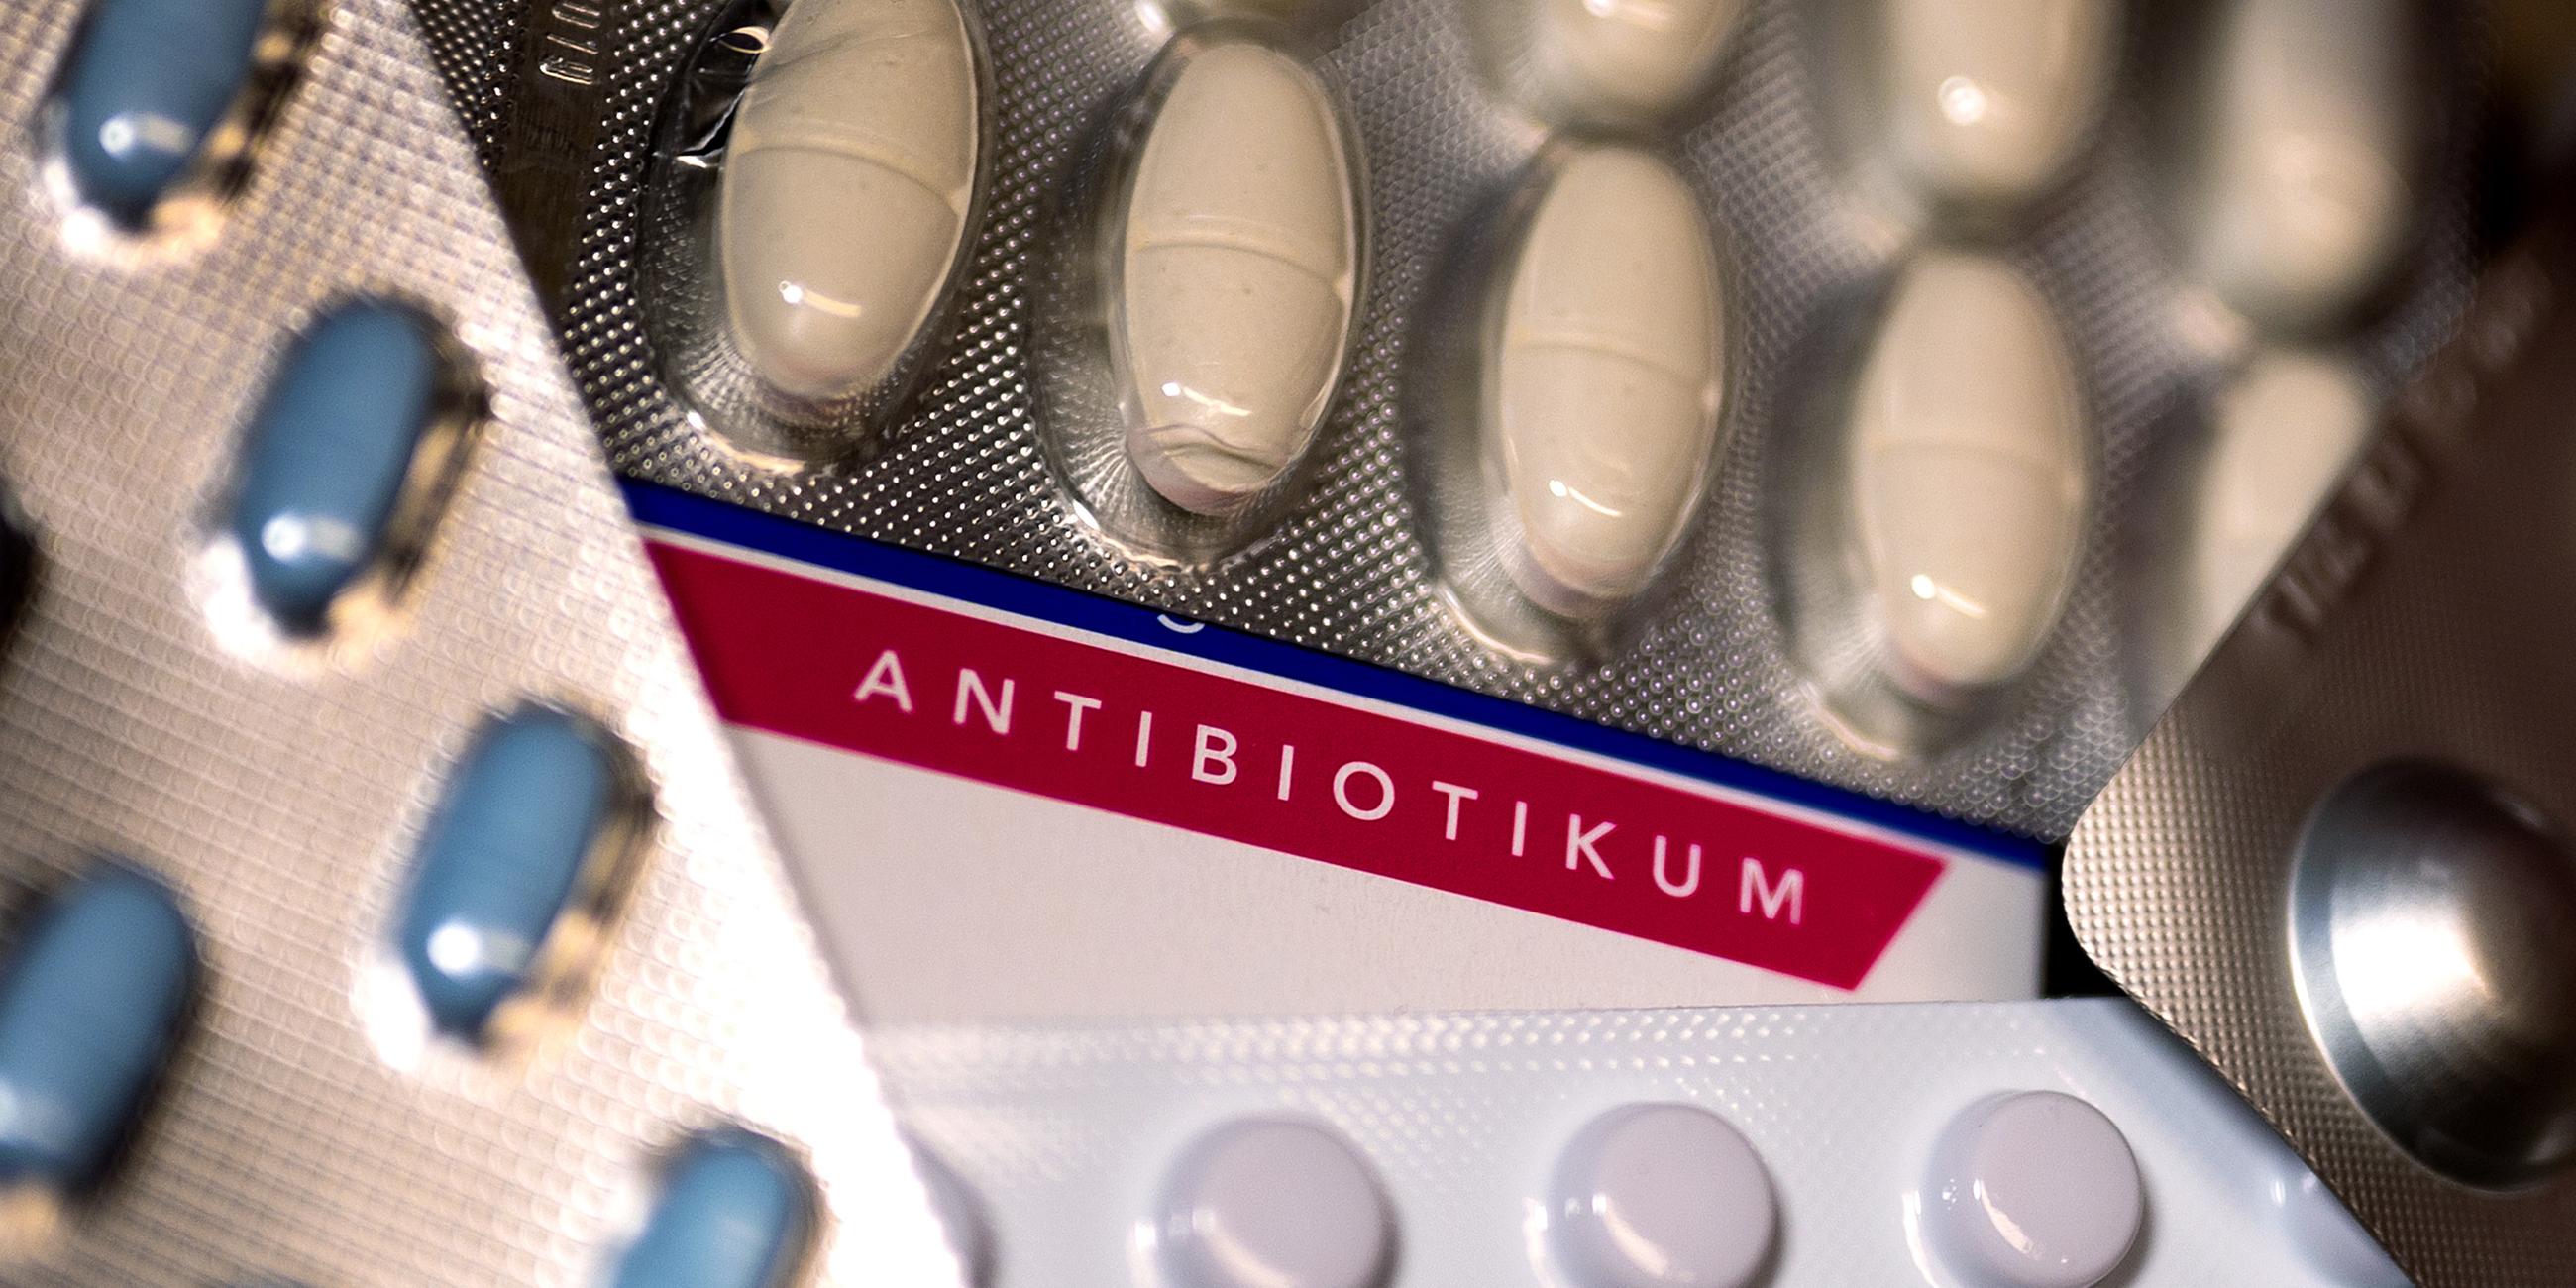 Mehrere Blister mit Tabletten und Pillen überdecken eine Packung mit der Aufschrift "Antibiotikum".